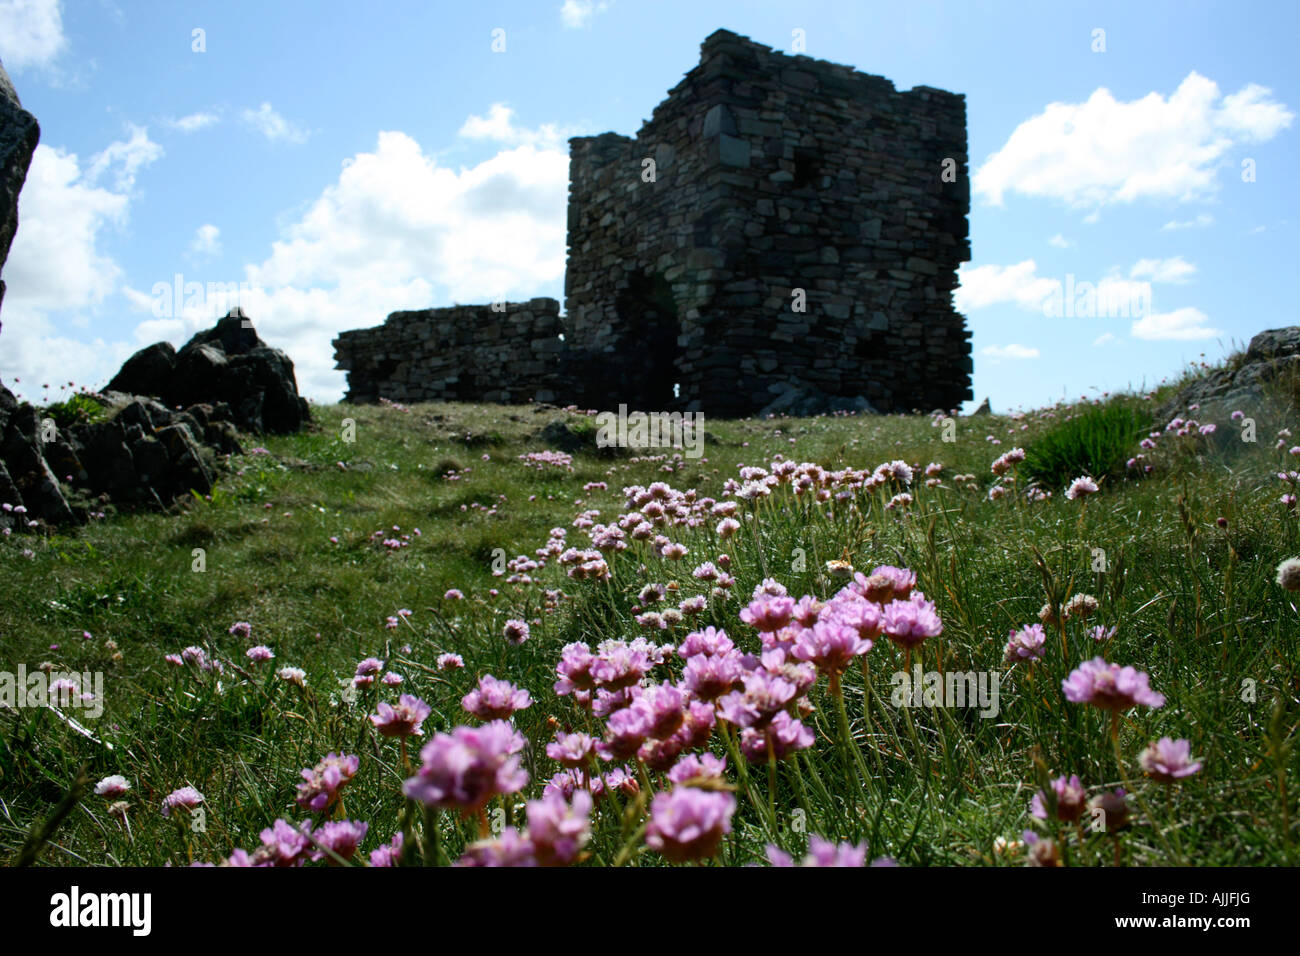 Ruines du château sur Carraickabraghy Rock frères par la mer, l'île de Doagh Co Donegal, Irlande, Inishowen Banque D'Images